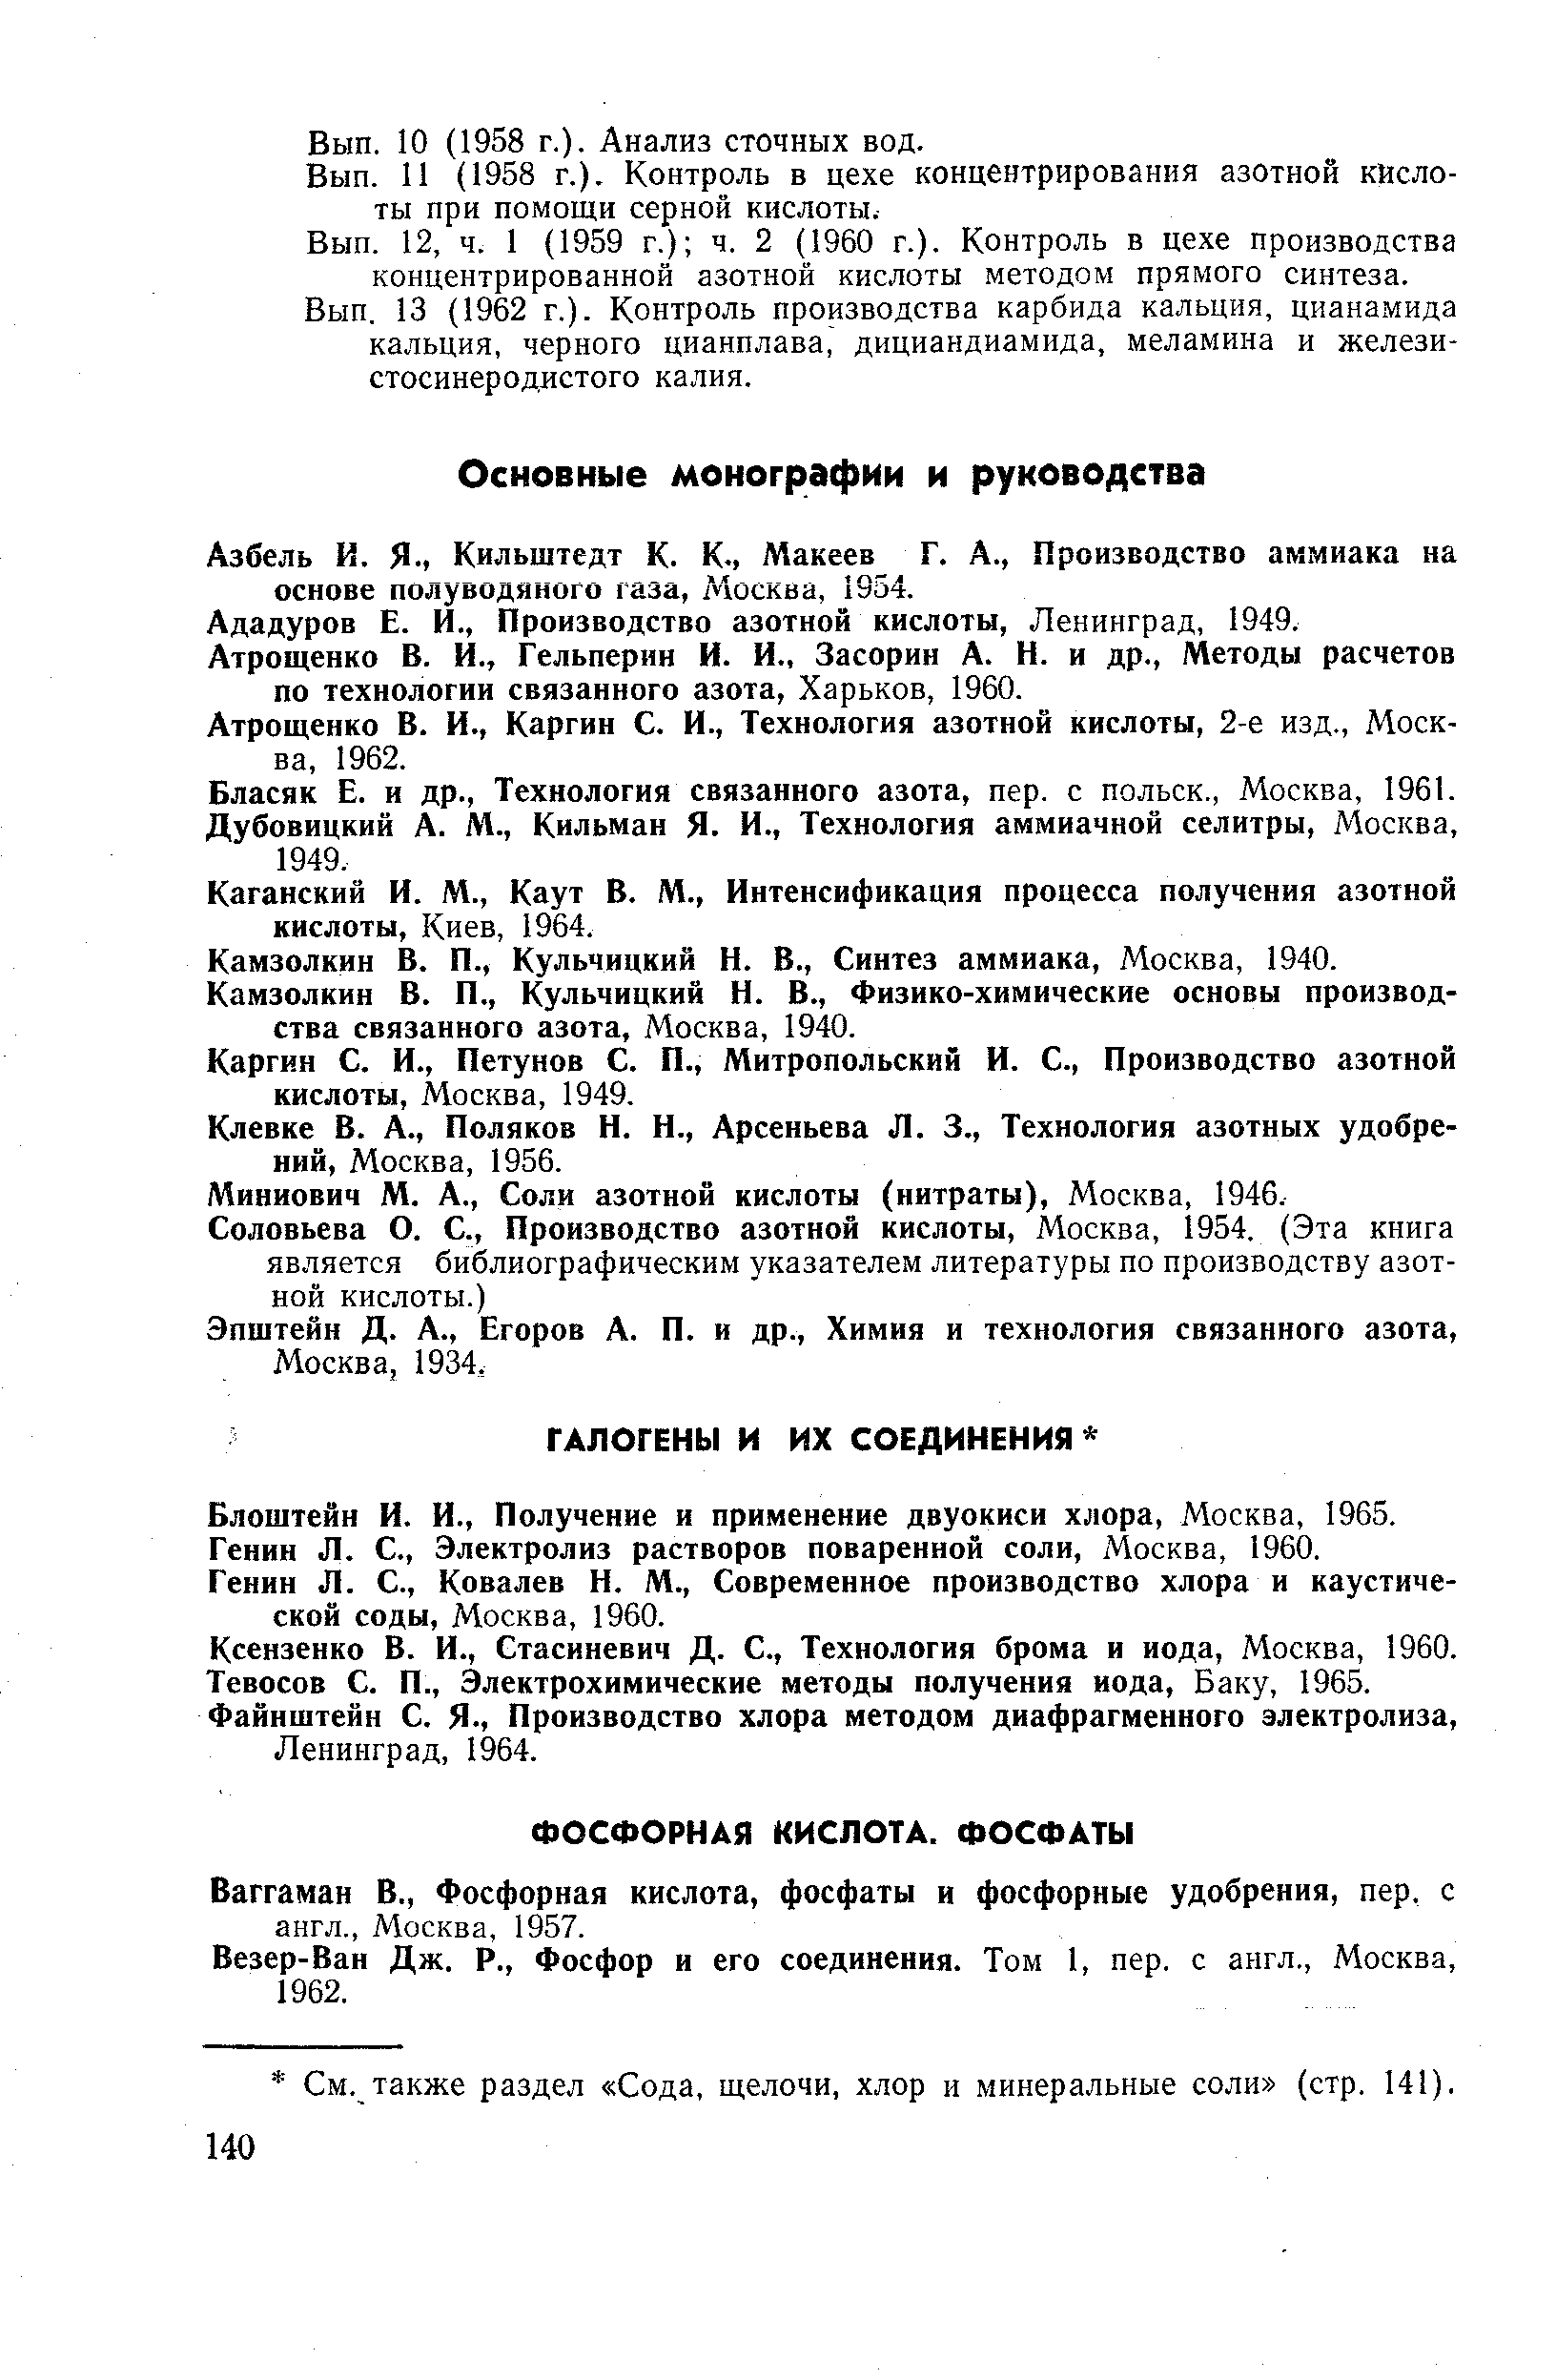 Генин Л. С., Электролиз растворов поваренной соли, Москва, 1960.